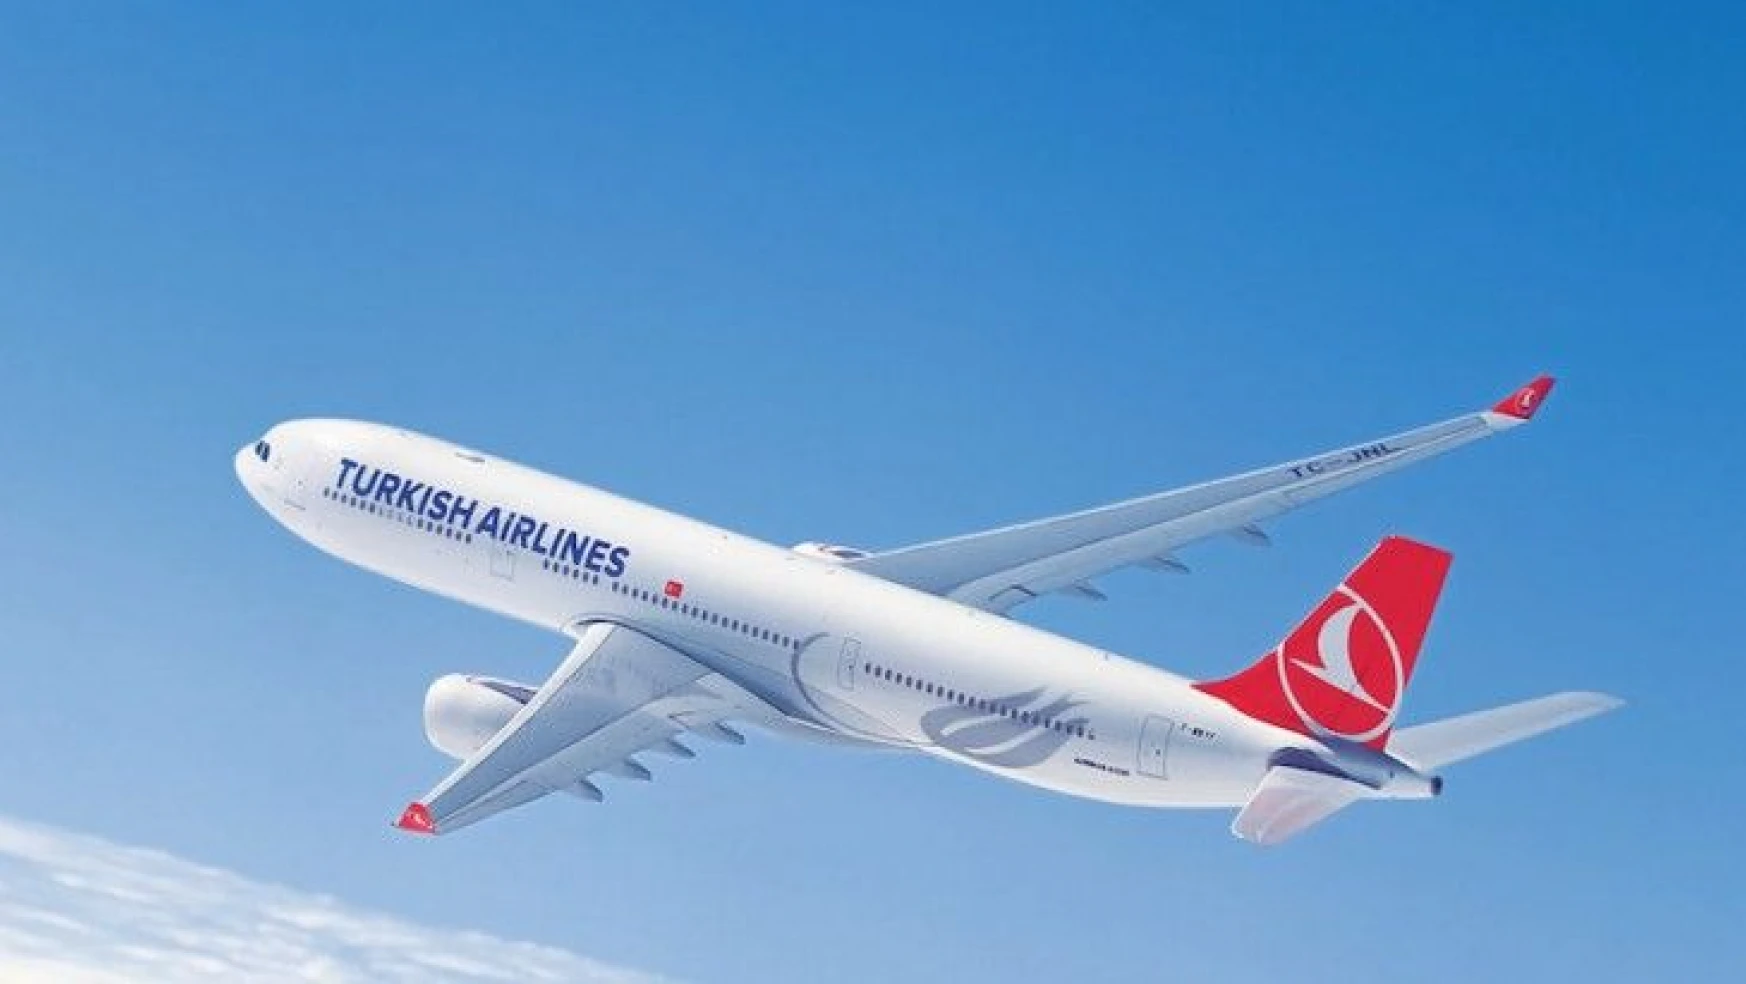 İstanbul-Nahçıvan-Gence hattında haftalık 1 frekans uçuş